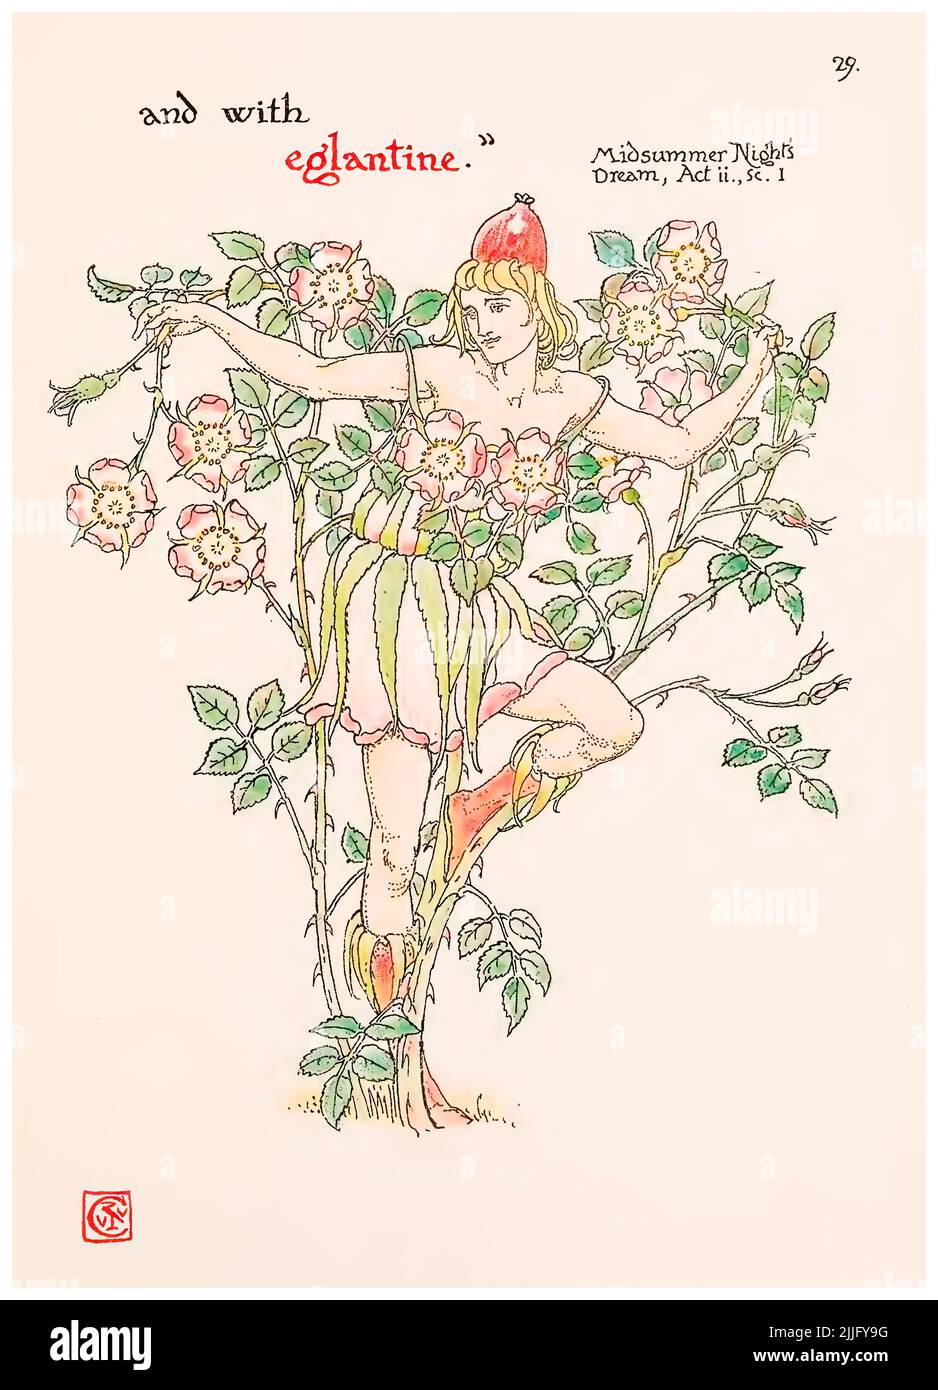 Eglantin (Süße Briarrose) aus dem Bildband "Blumen aus Shakespeares Garten", Illustration von Walter Crane, 1909 Stockfoto